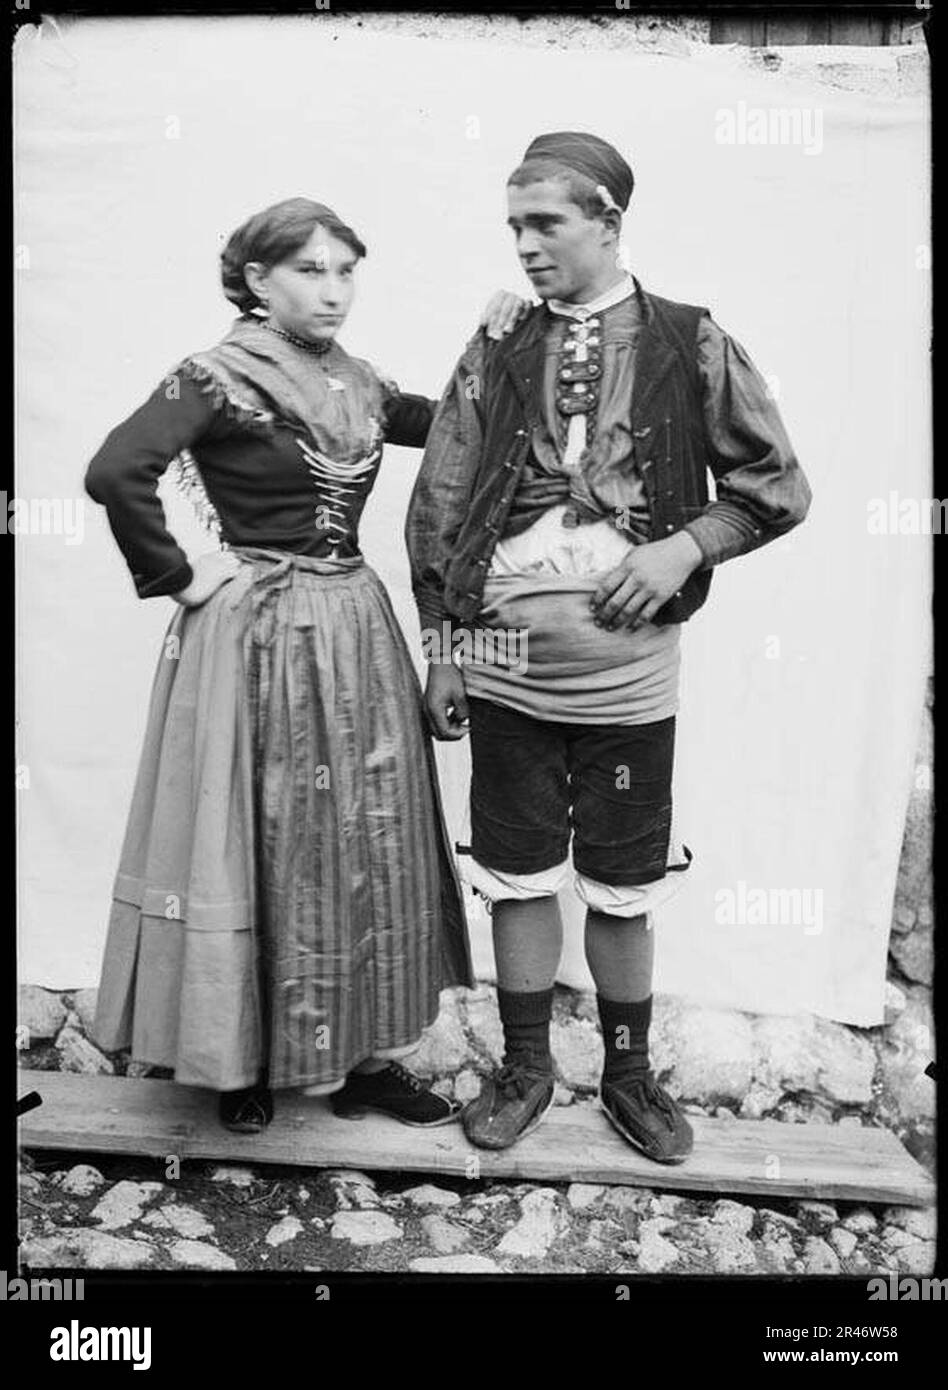 Un noi i una noia amb indumentària tradicional Stock Photo